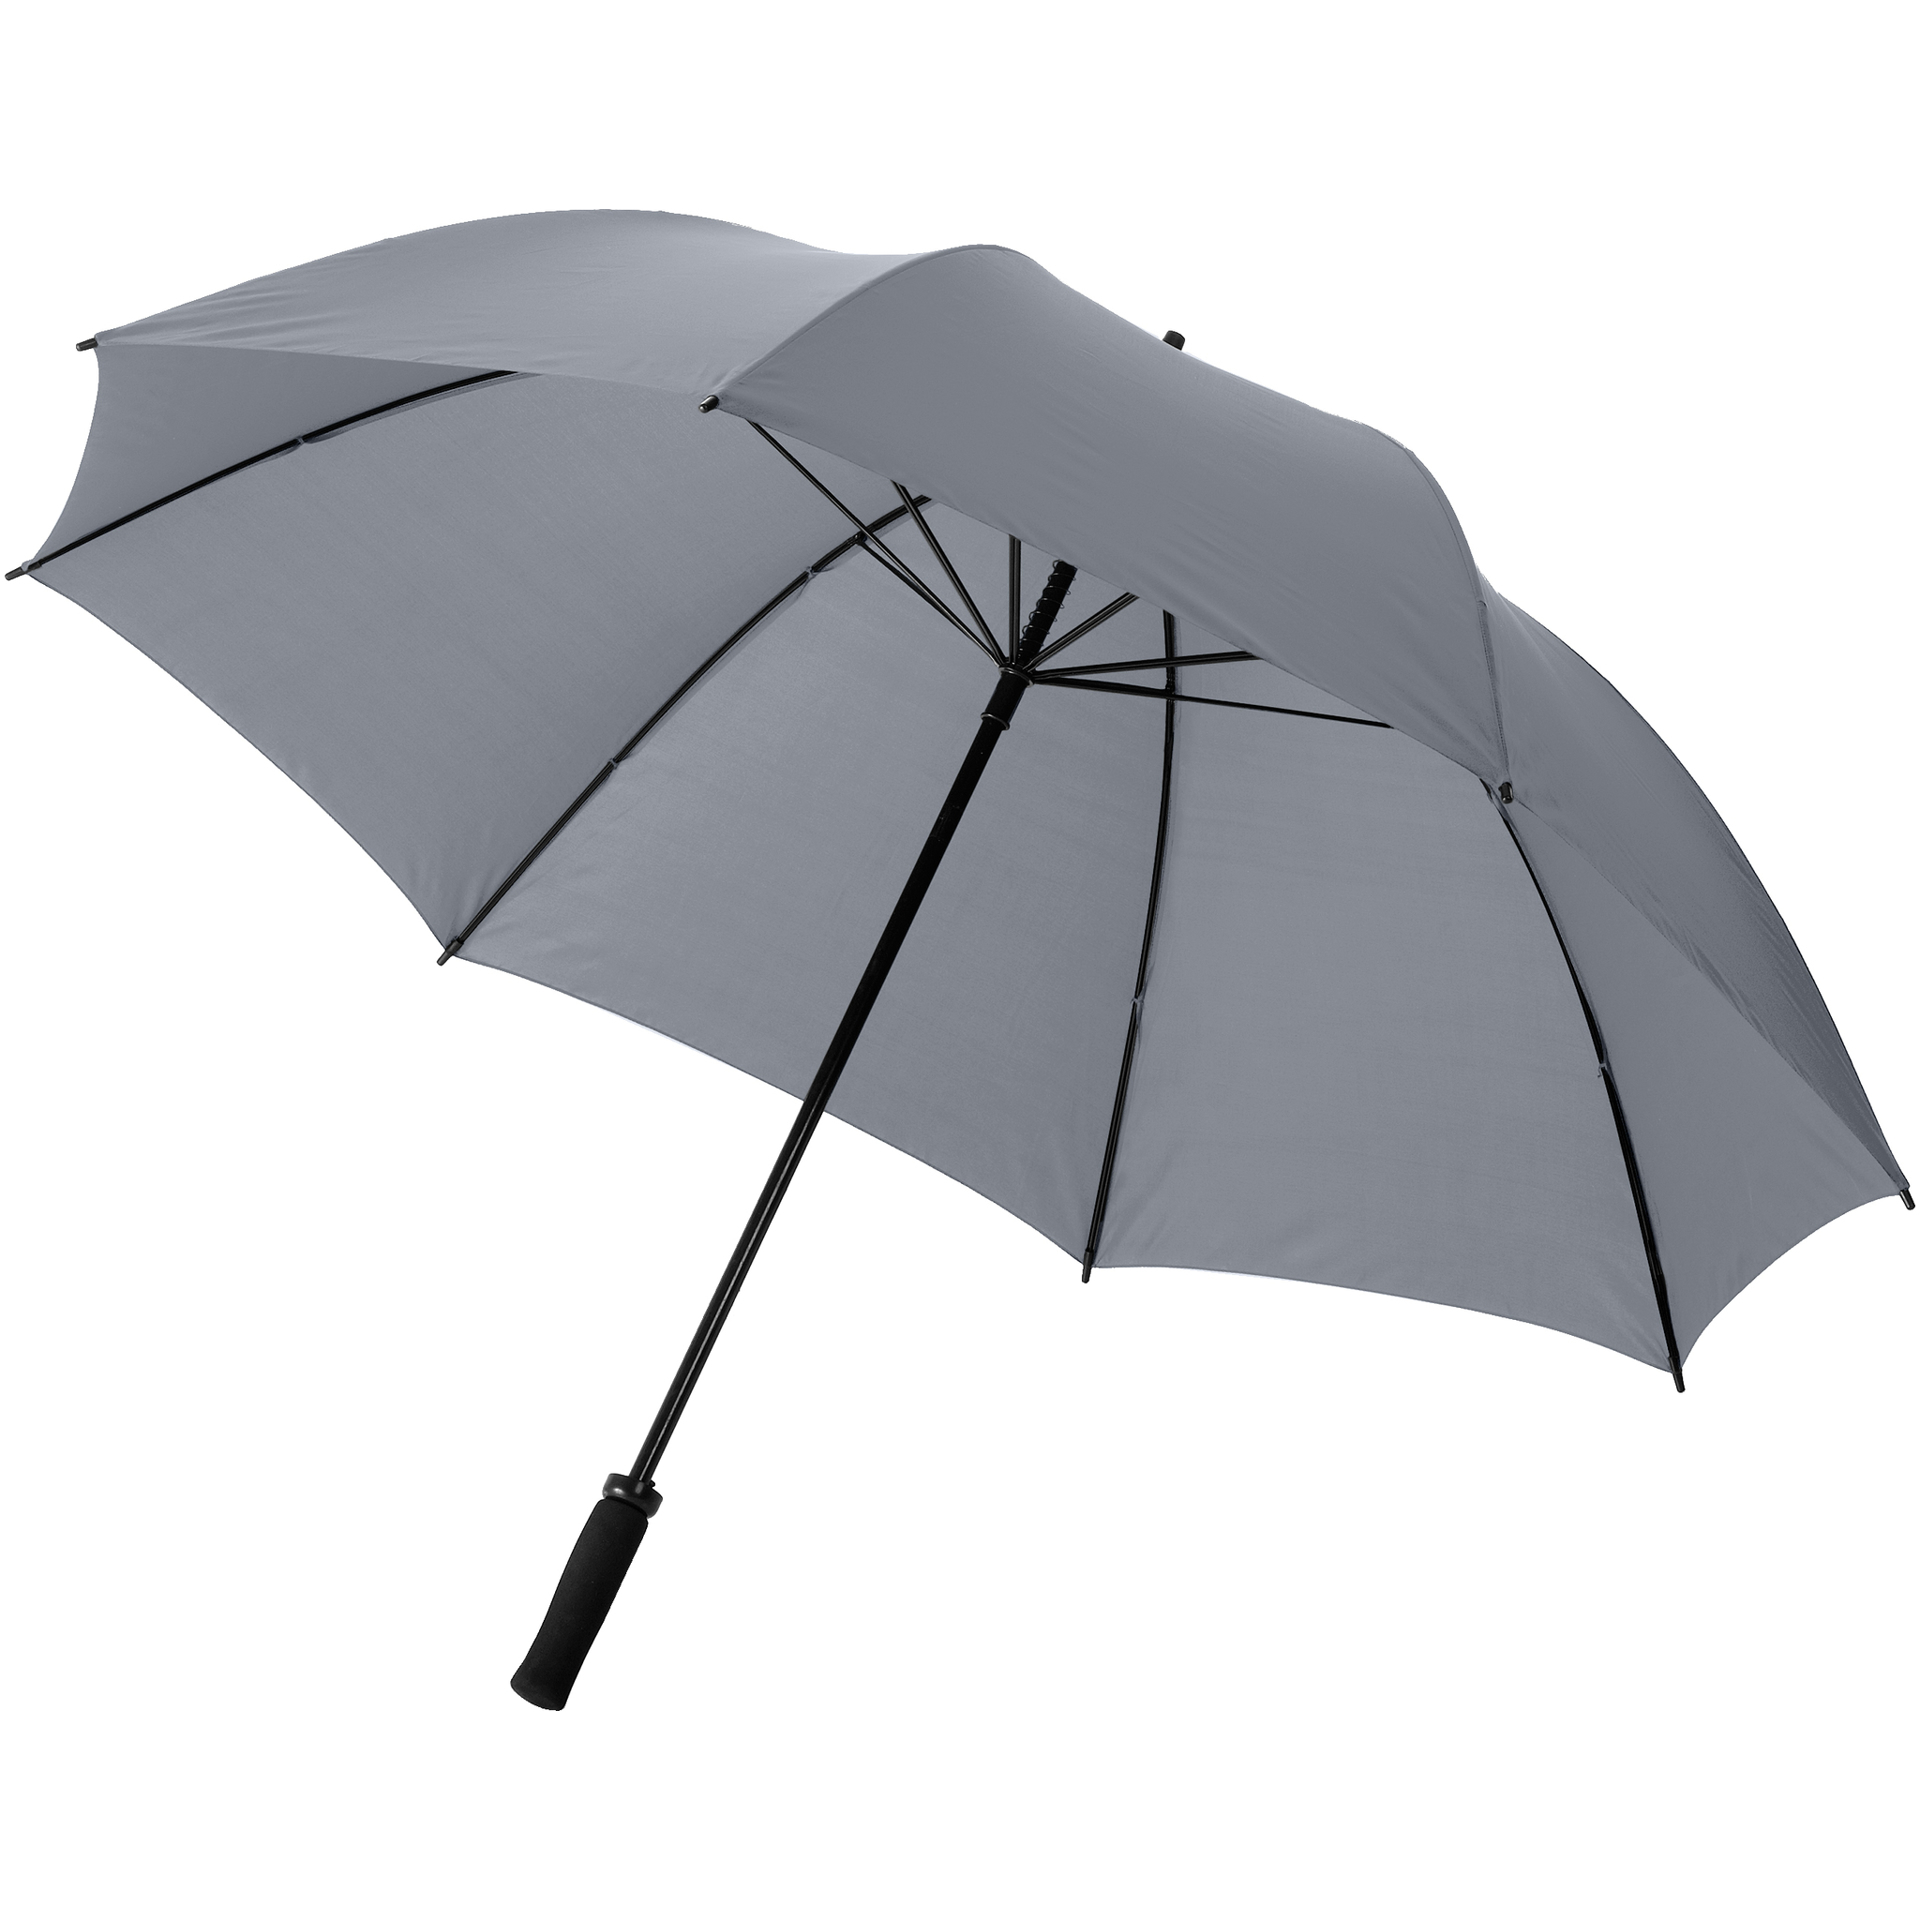 Storm Umbrella in grey